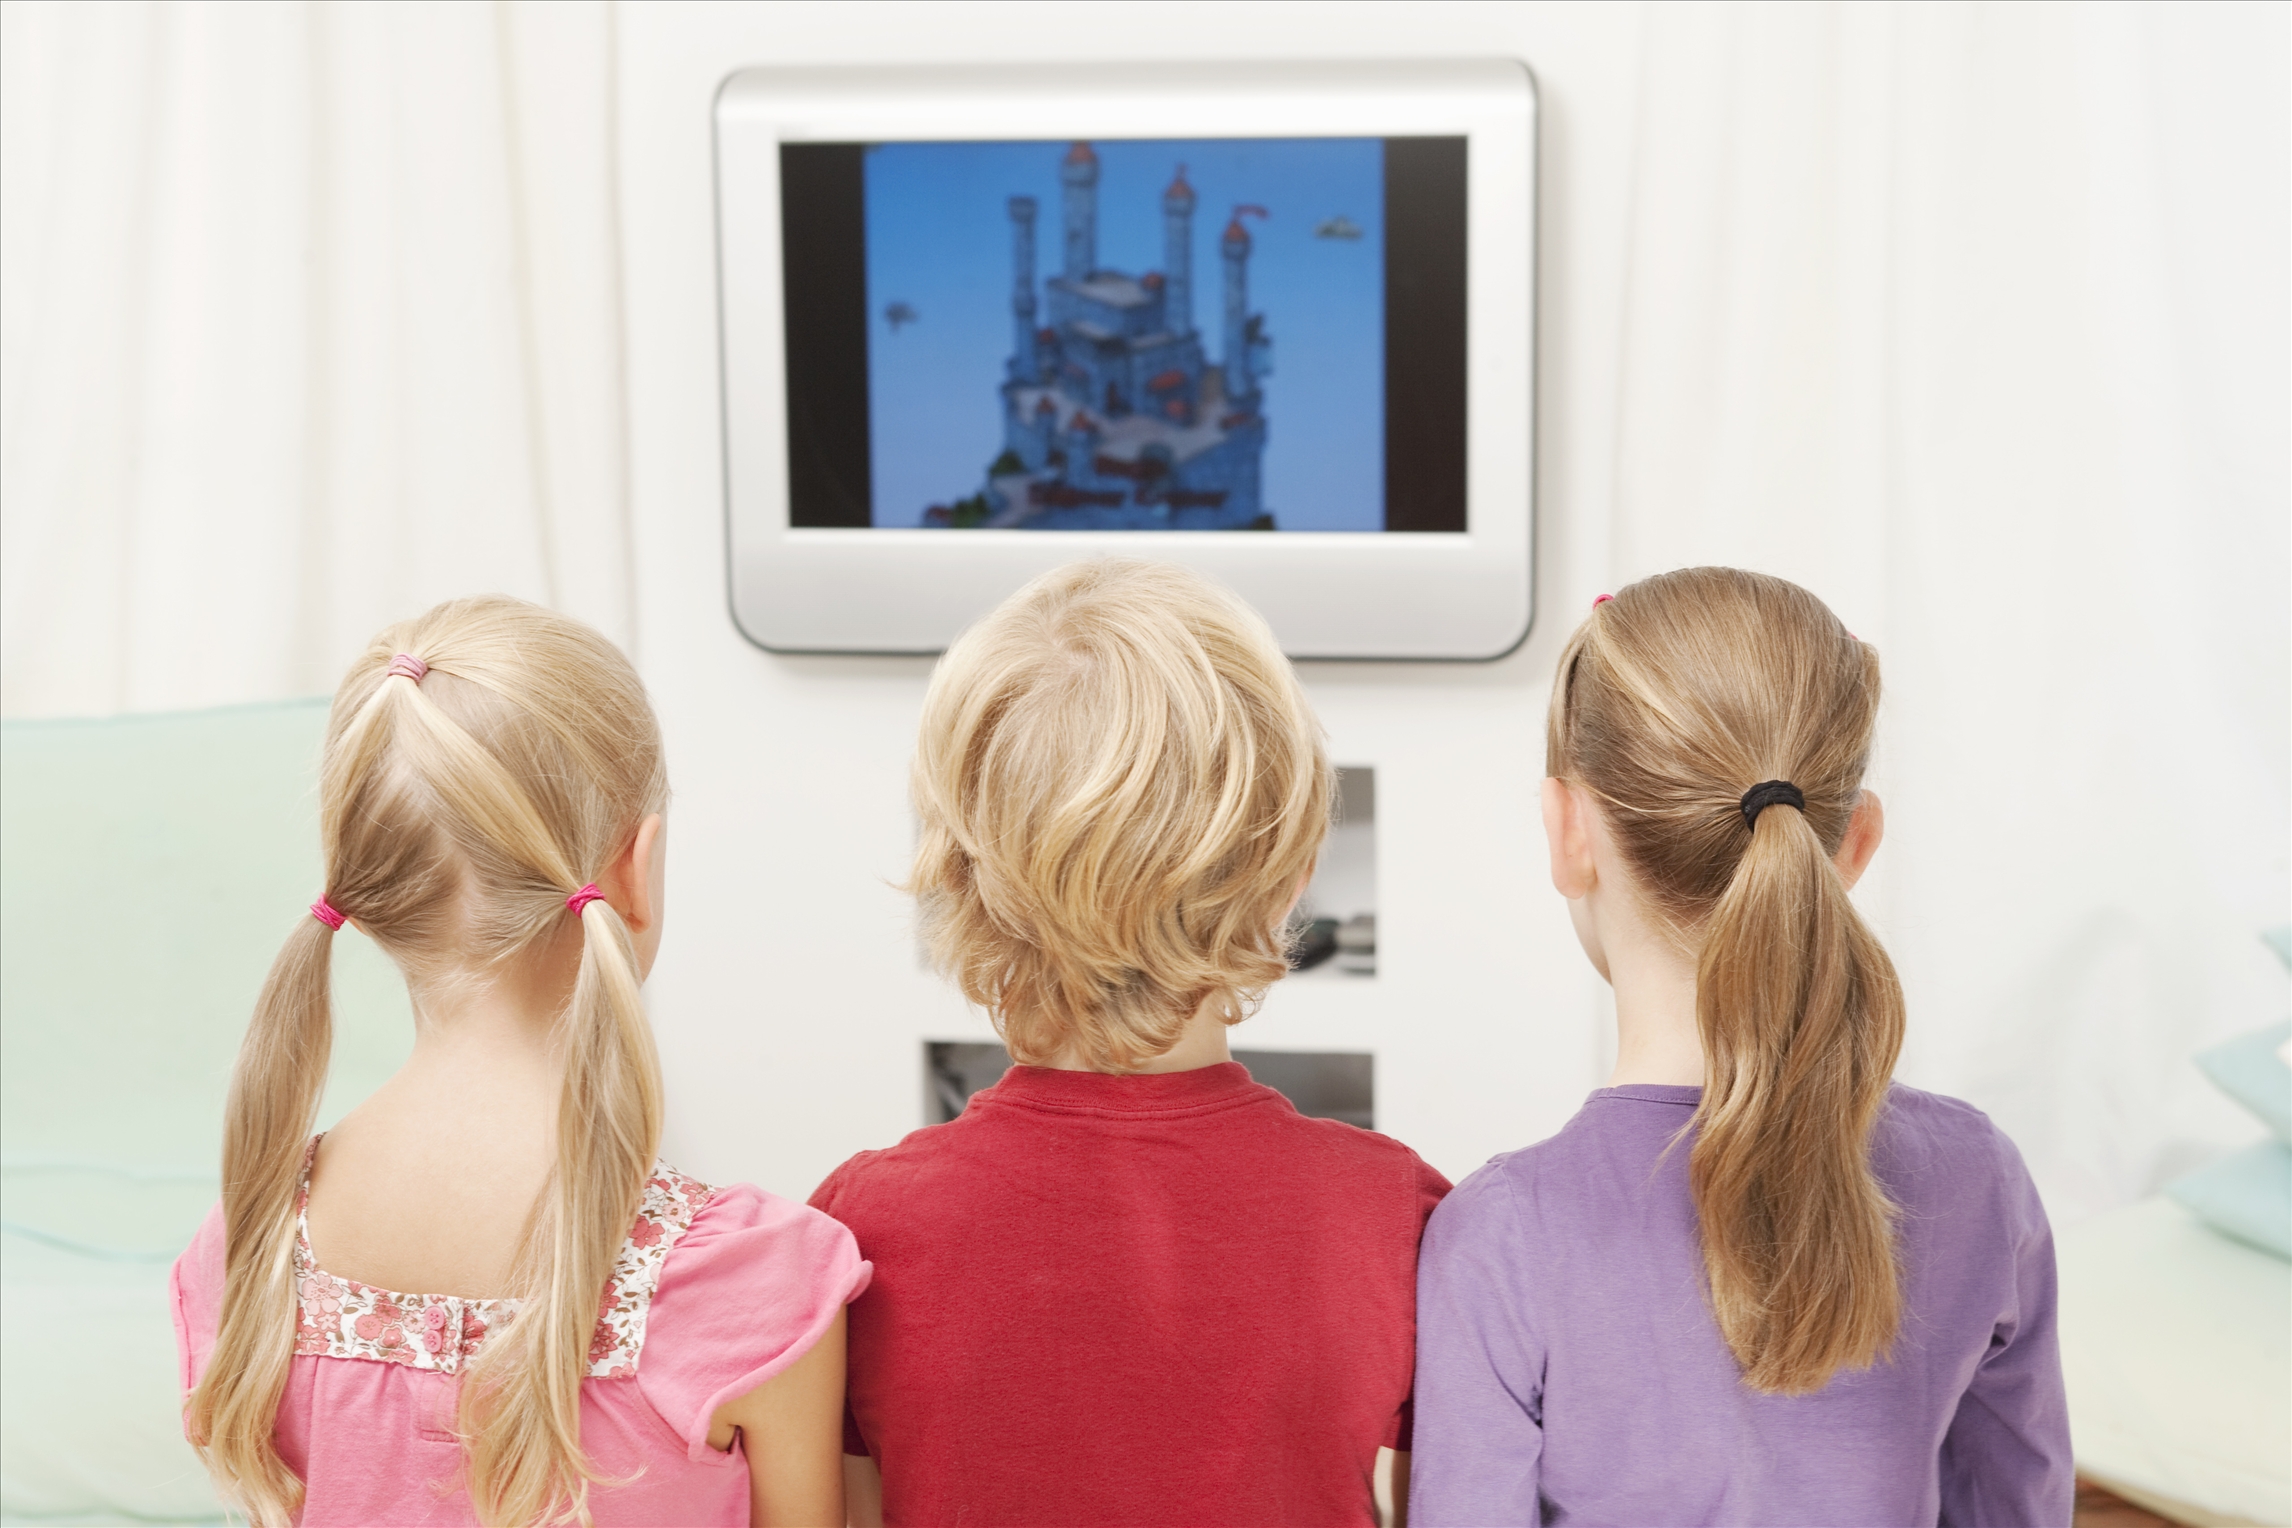 看电视和阅读对孩子影响的差别巨大?科学实验震惊你!